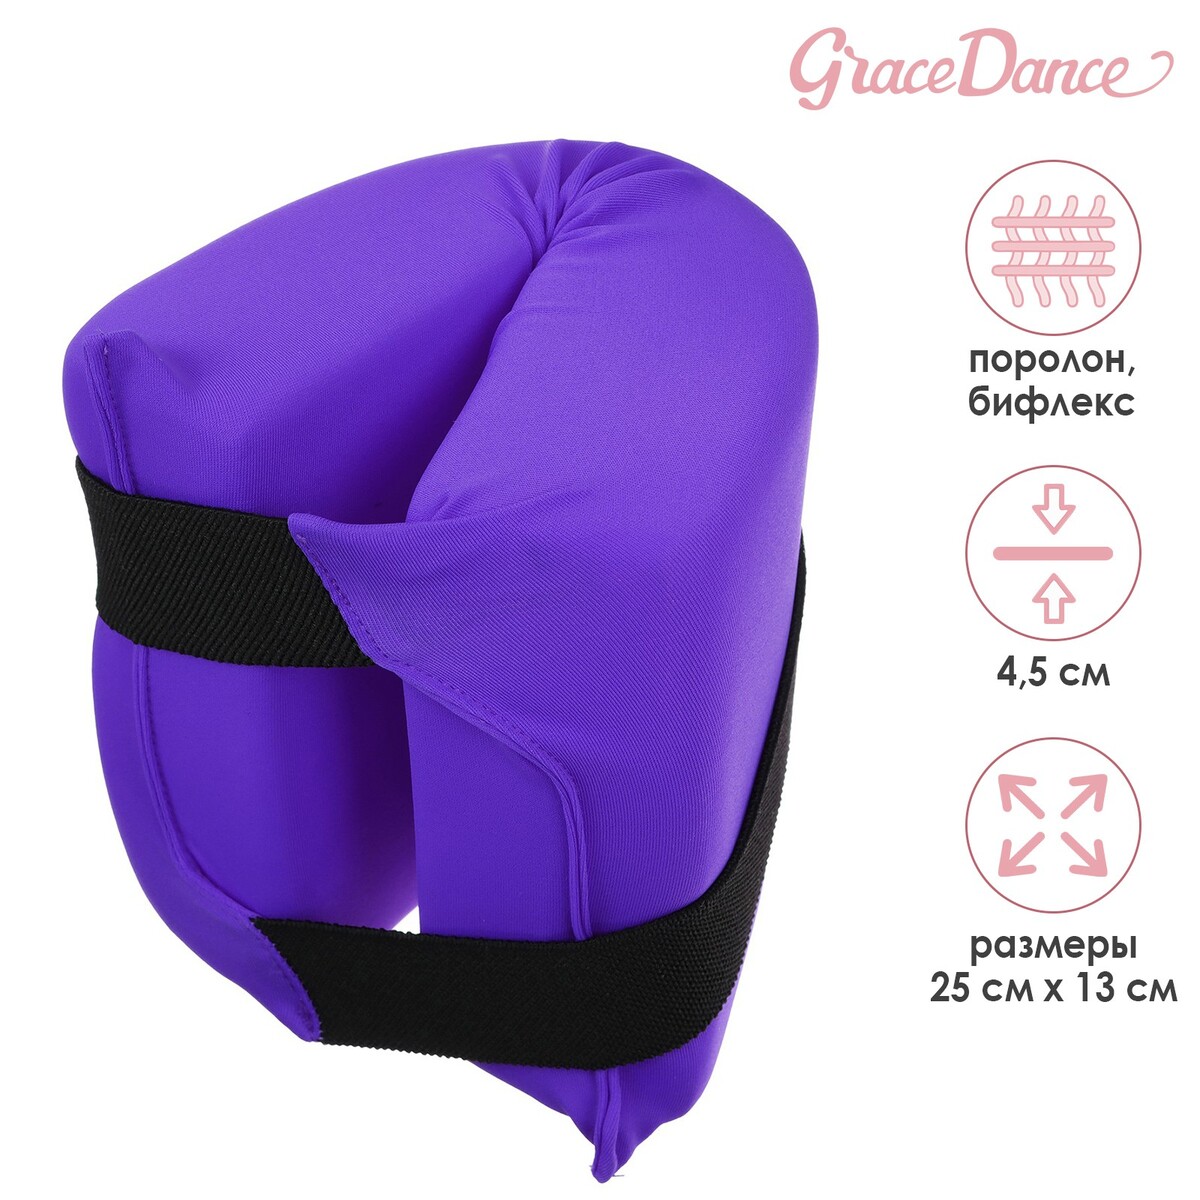 Подушка для растяжки grace dance, цвет фиолетовый подушка гимнастическая для растяжки grace dance 38х25 см фуксия